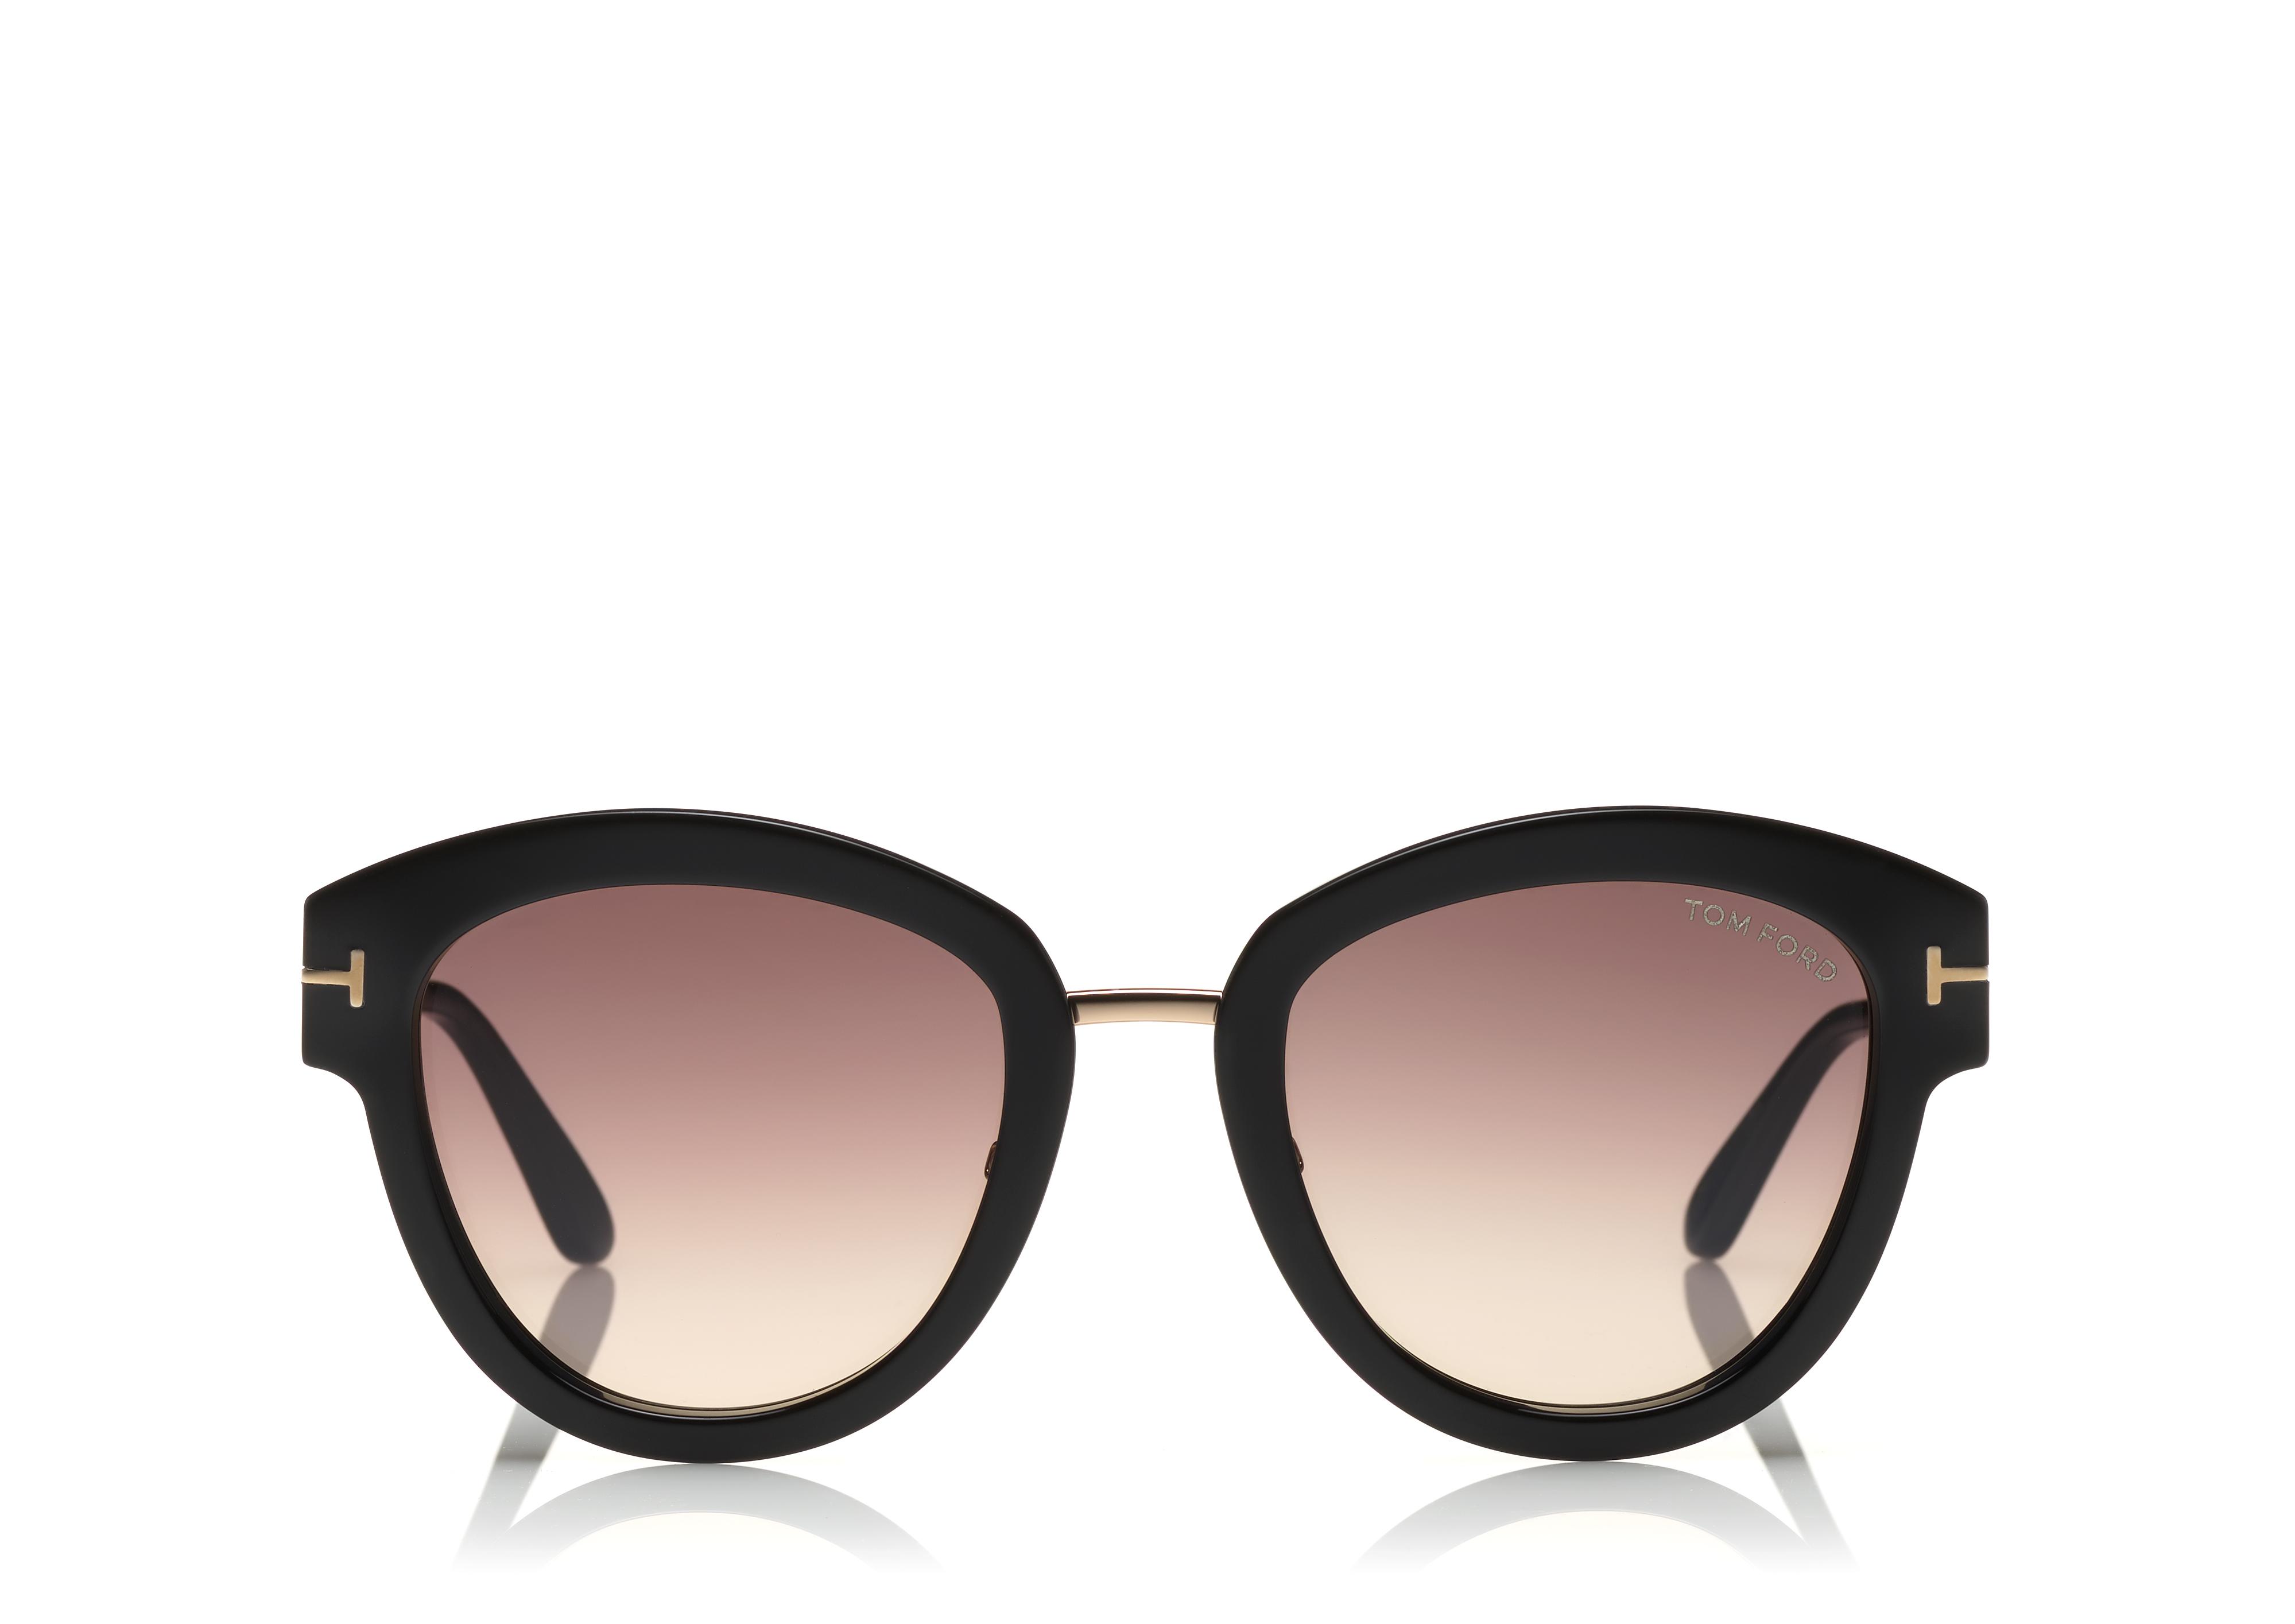 Tom 2018 Sunglasses Deals, SAVE 54% horiconphoenix.com